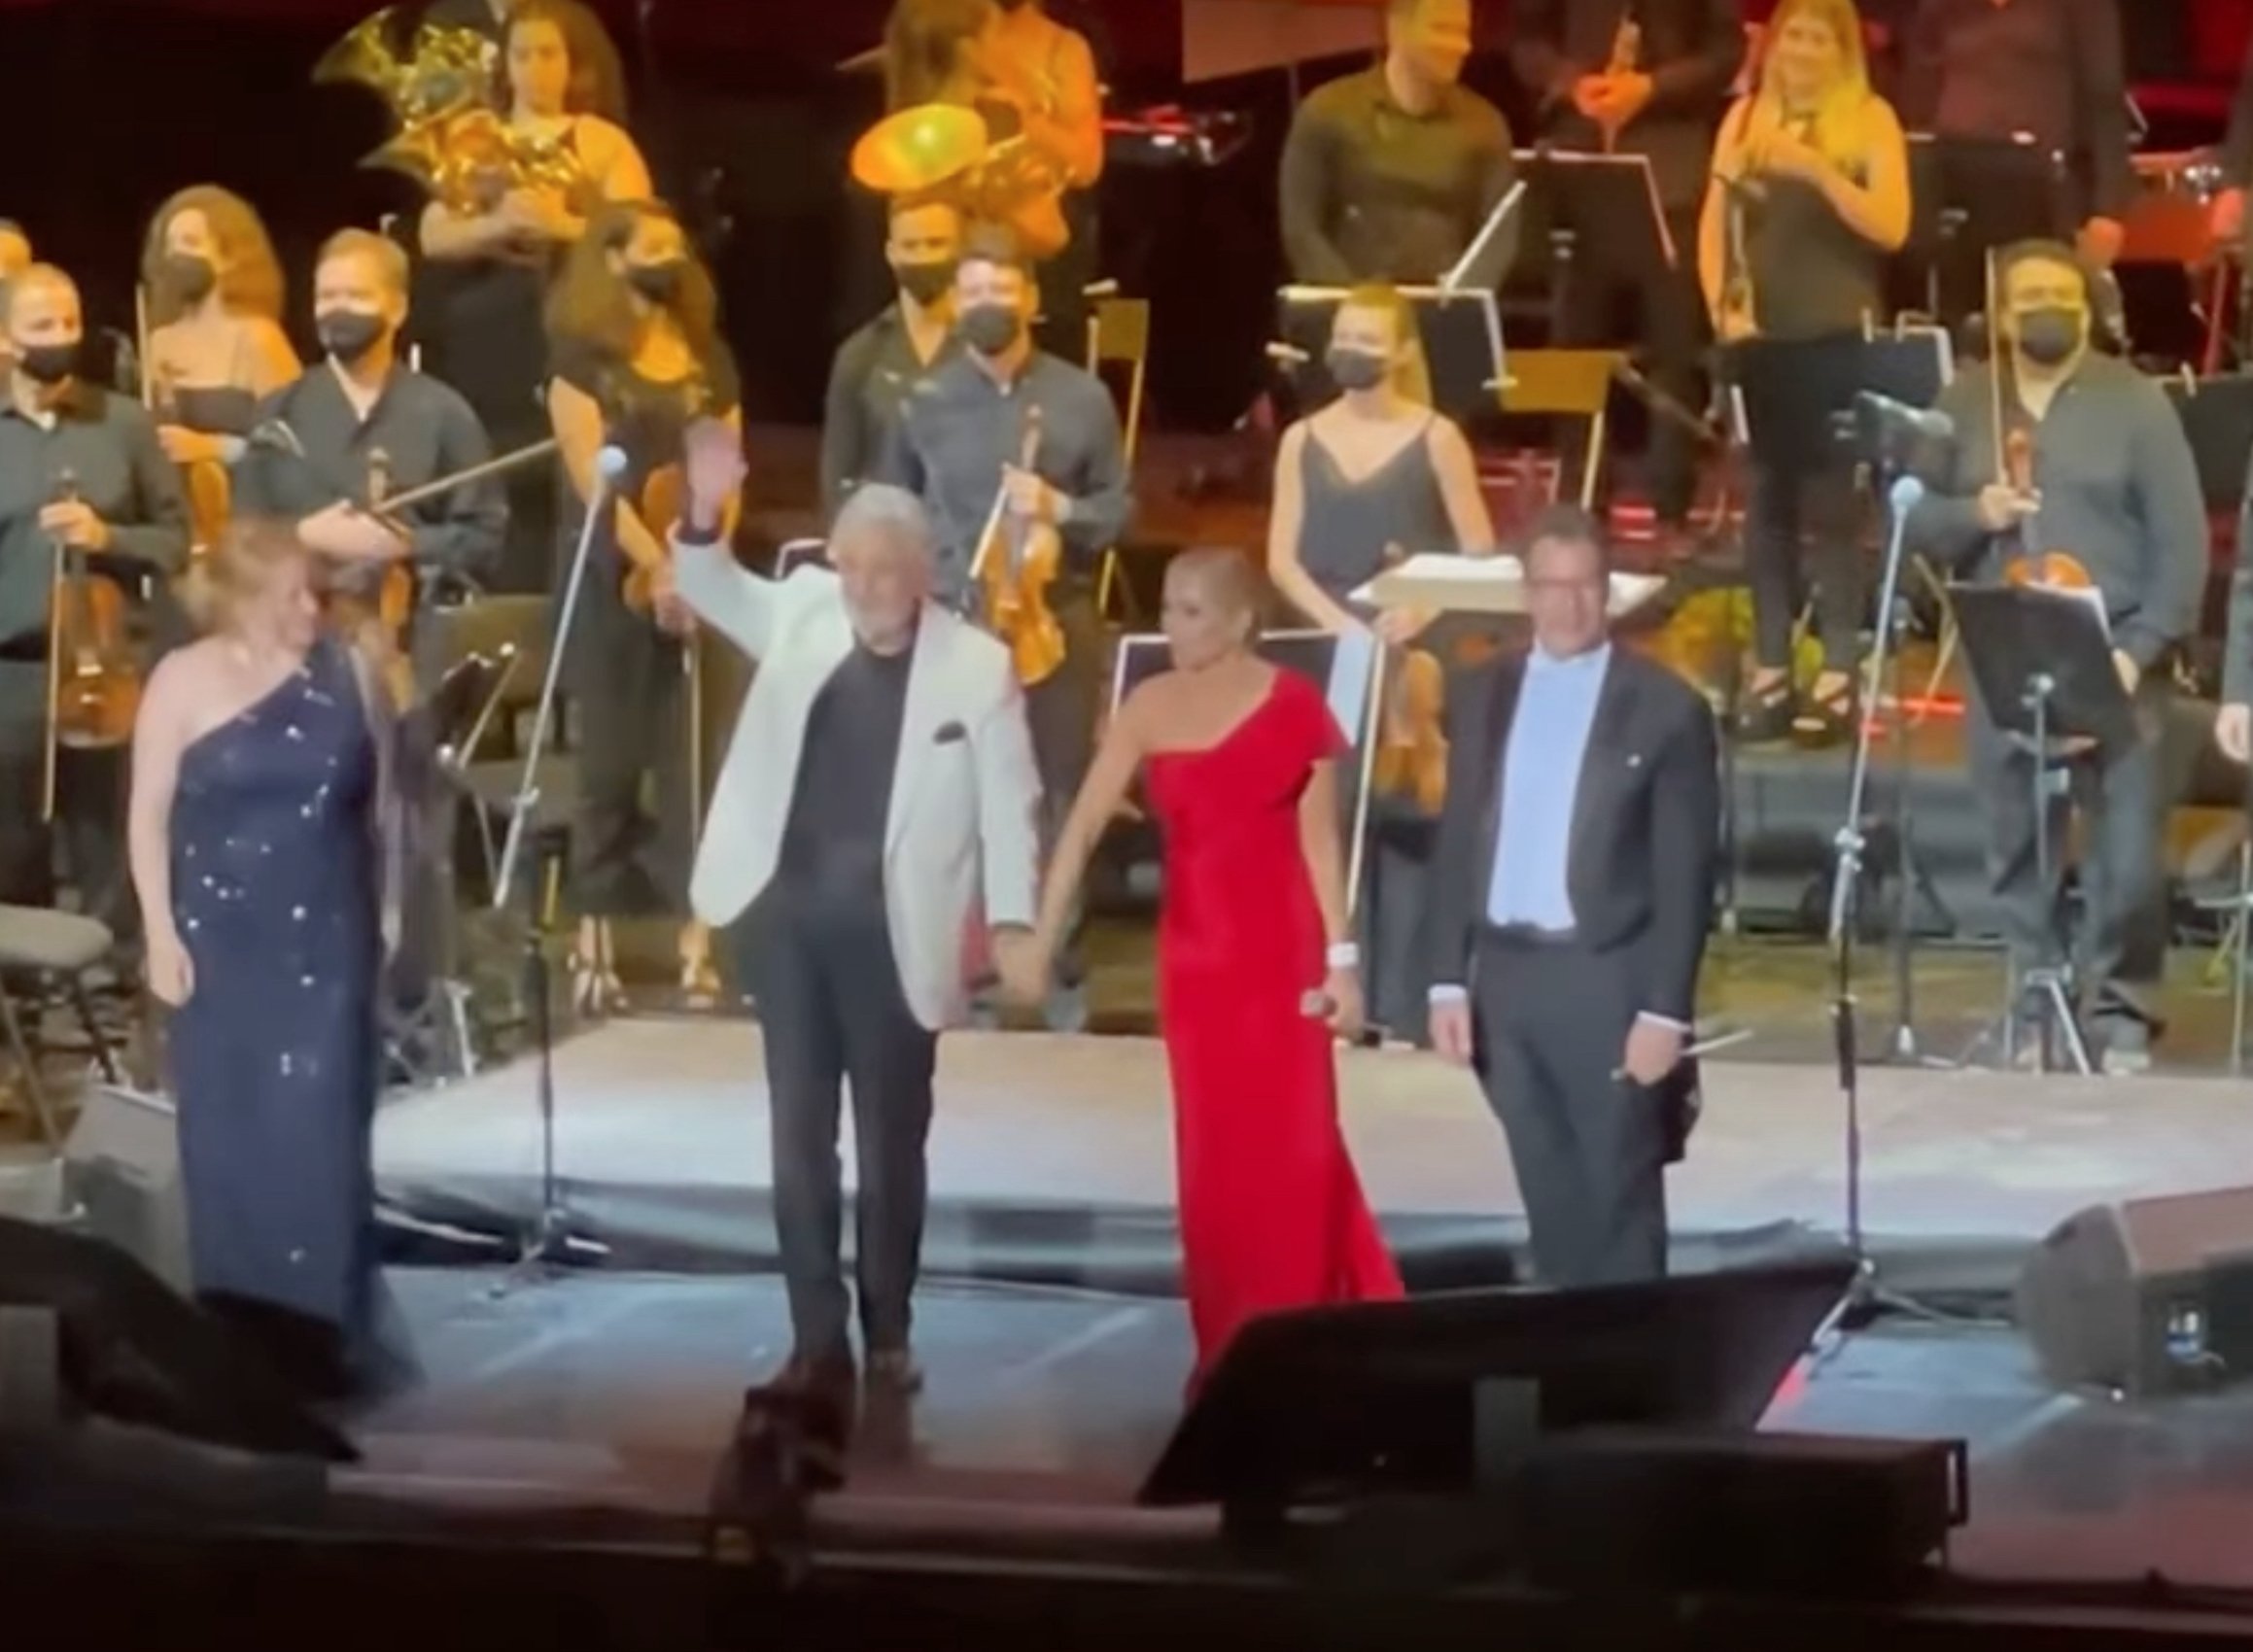 Disbarat patrioter de Marta Sánchez i Plácido Domingo cantant l'himne espanyol